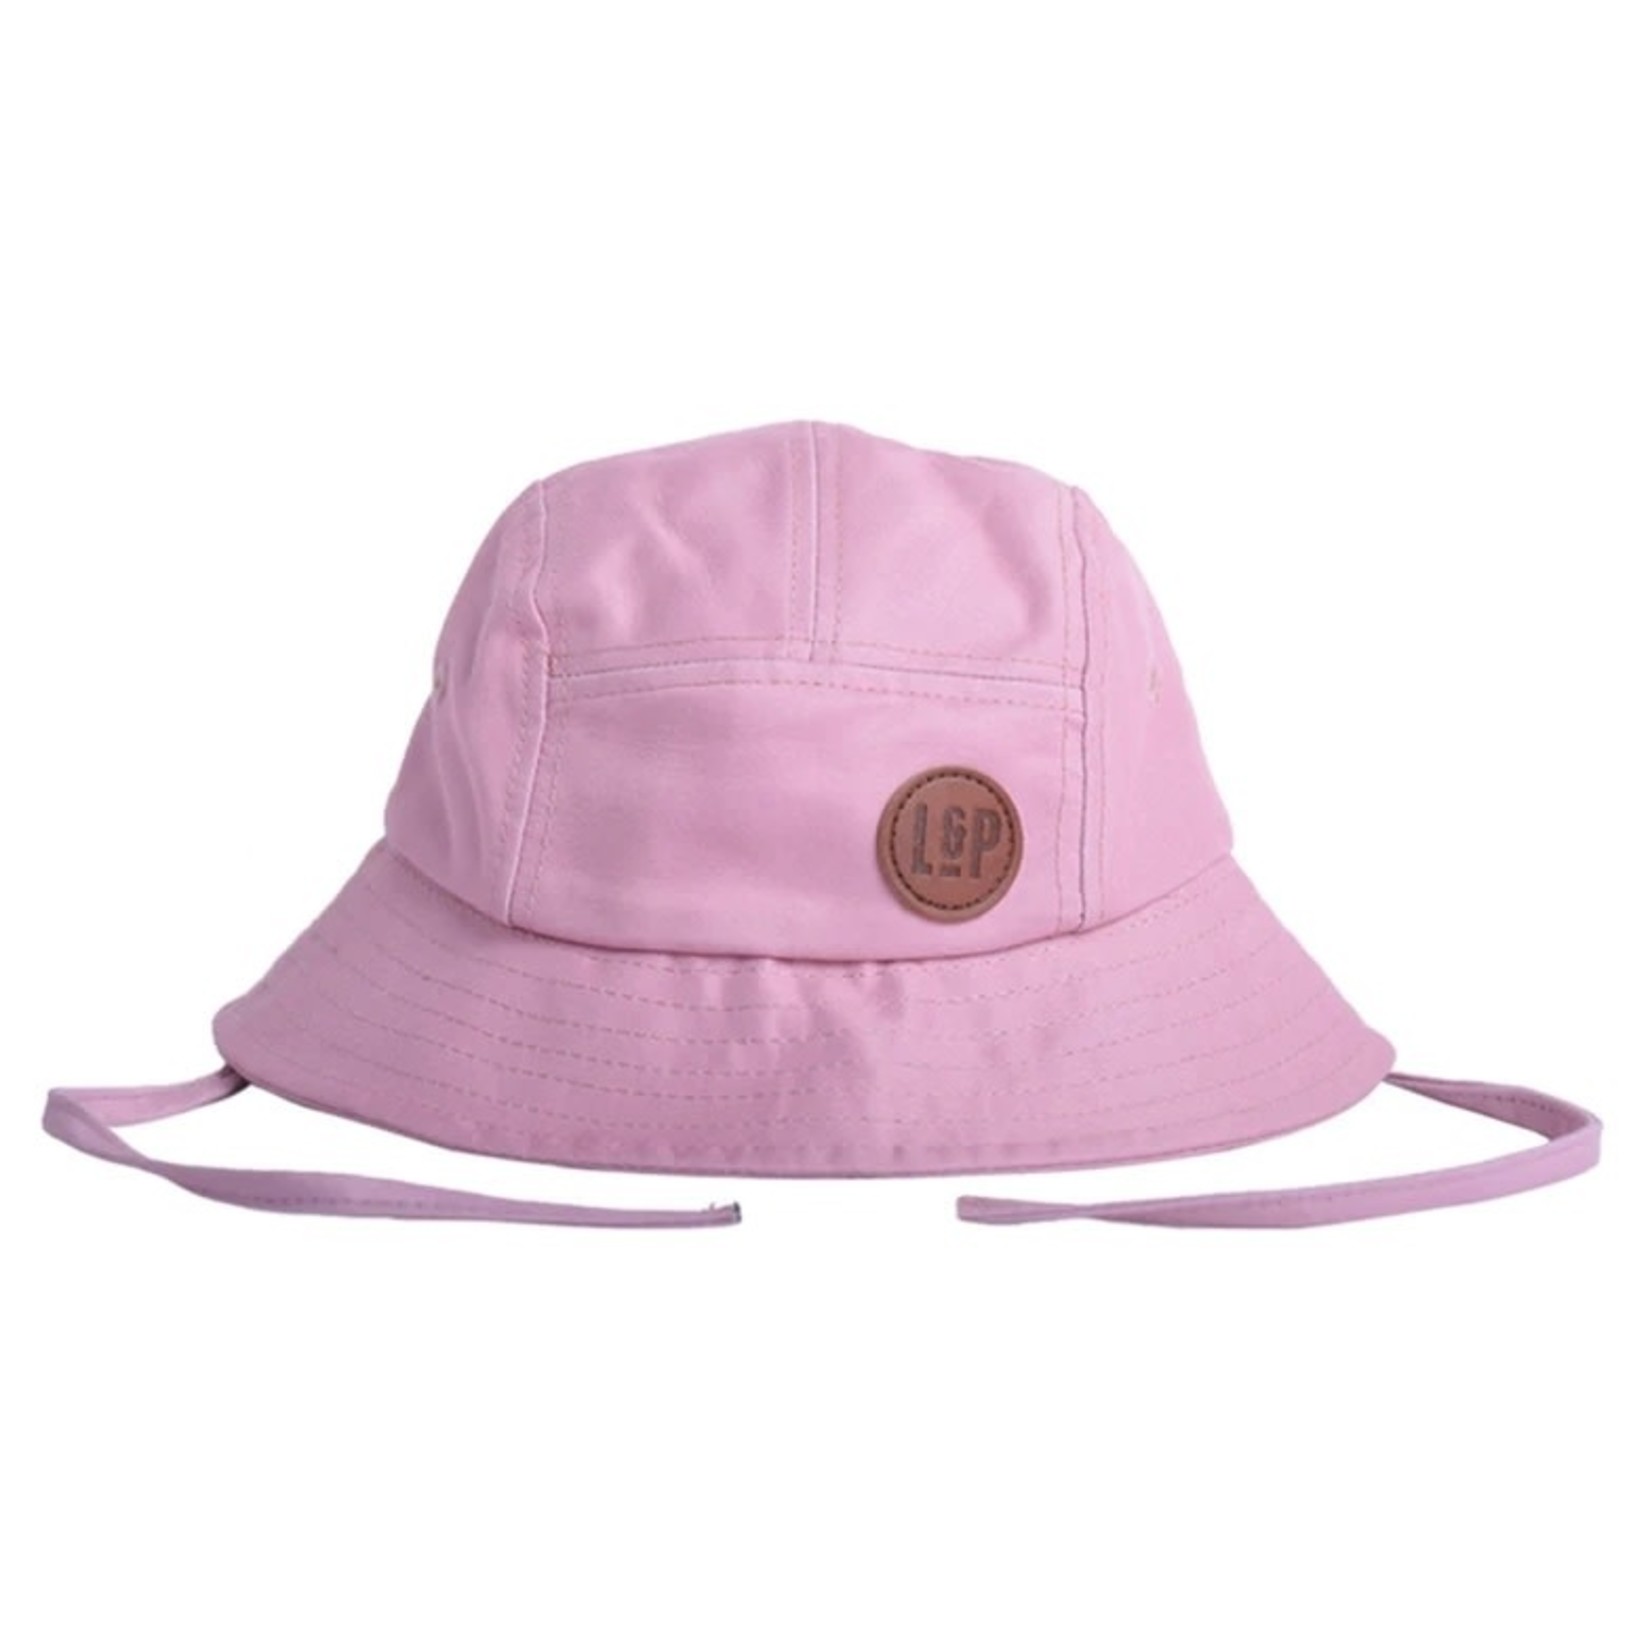 L&P Apparel L&P Apparel - Bucket Hat